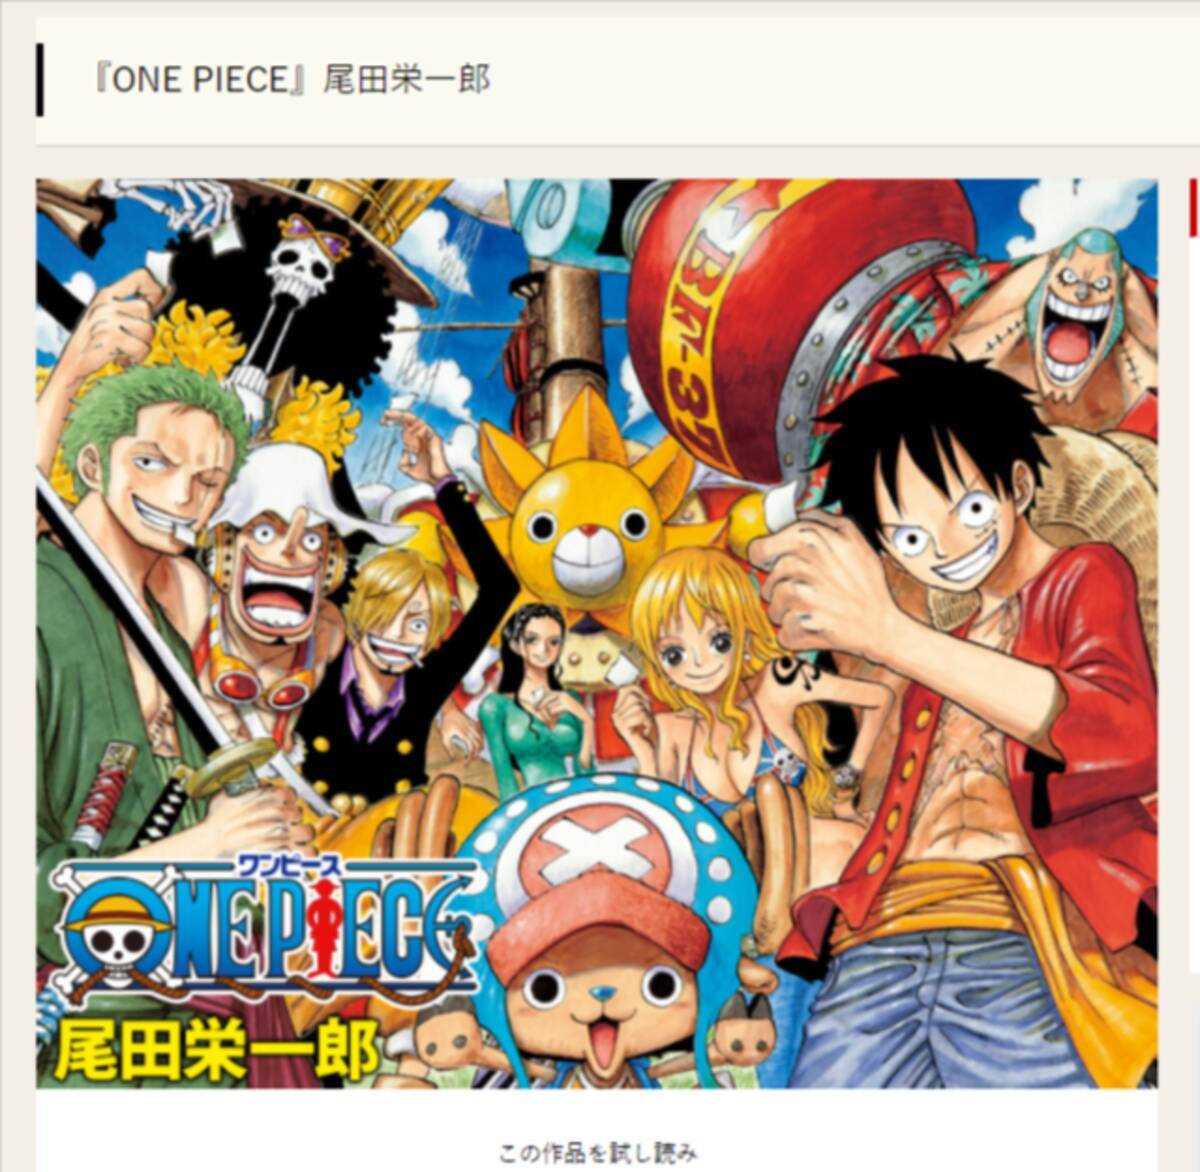 読者騒然 One Piece ルフィの一撃が意味するものは 激アツな名言も話題 第1026話 21年10月3日 エキサイトニュース